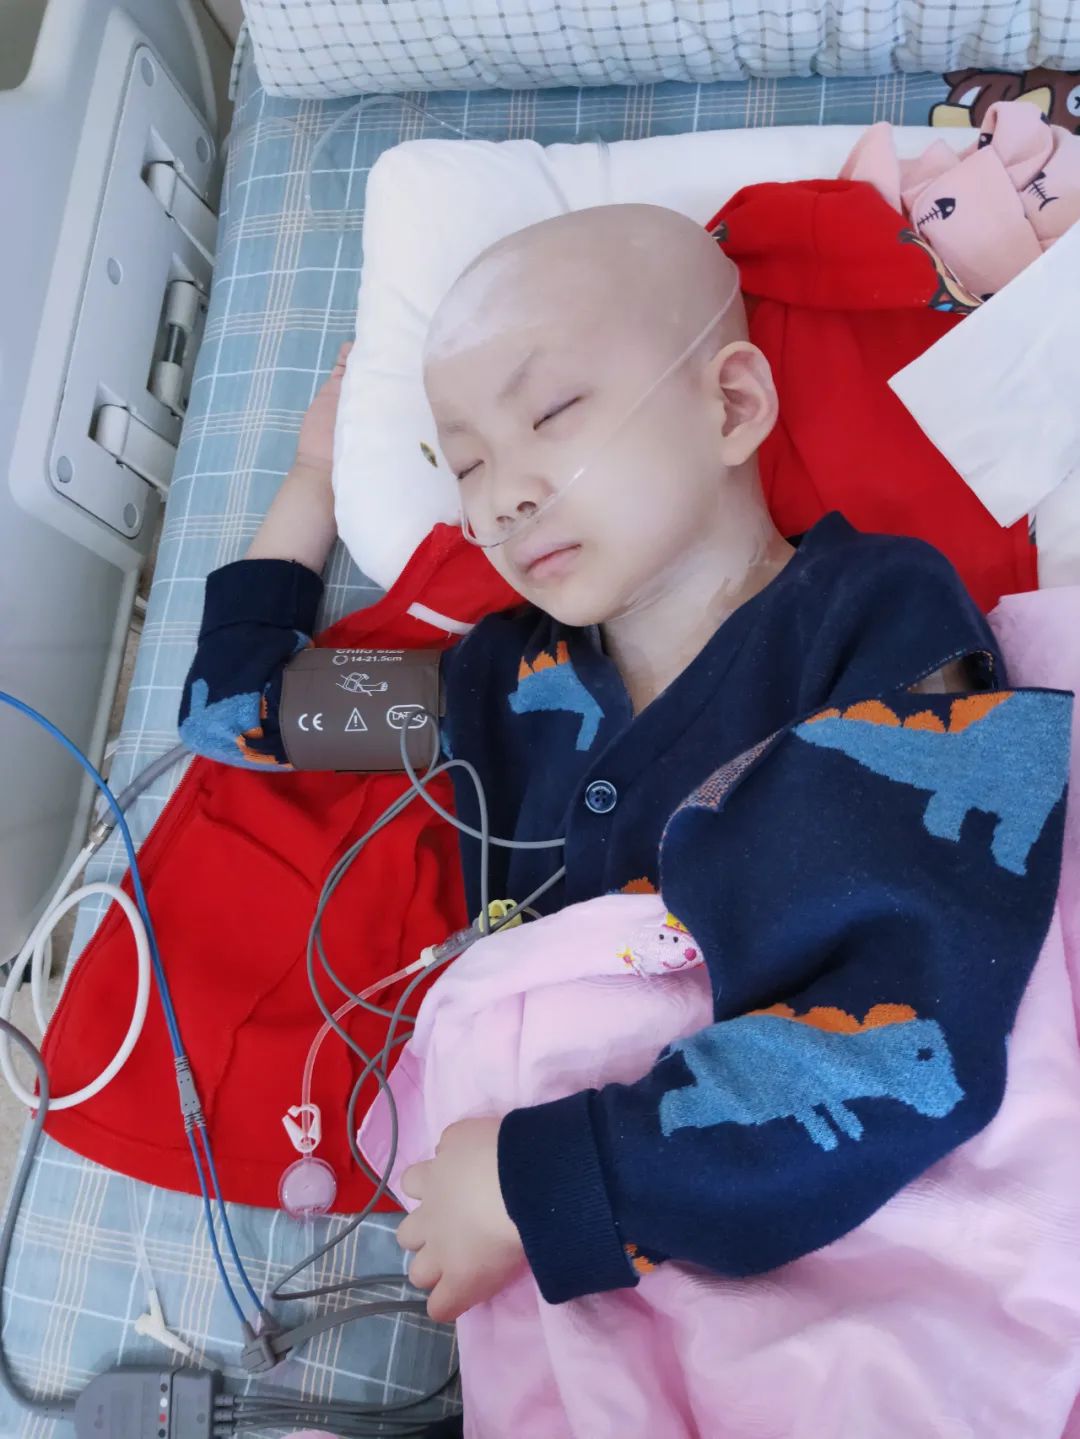 救救我!鄂尔多斯7岁小女孩抗争恶性肿瘤,让人心疼